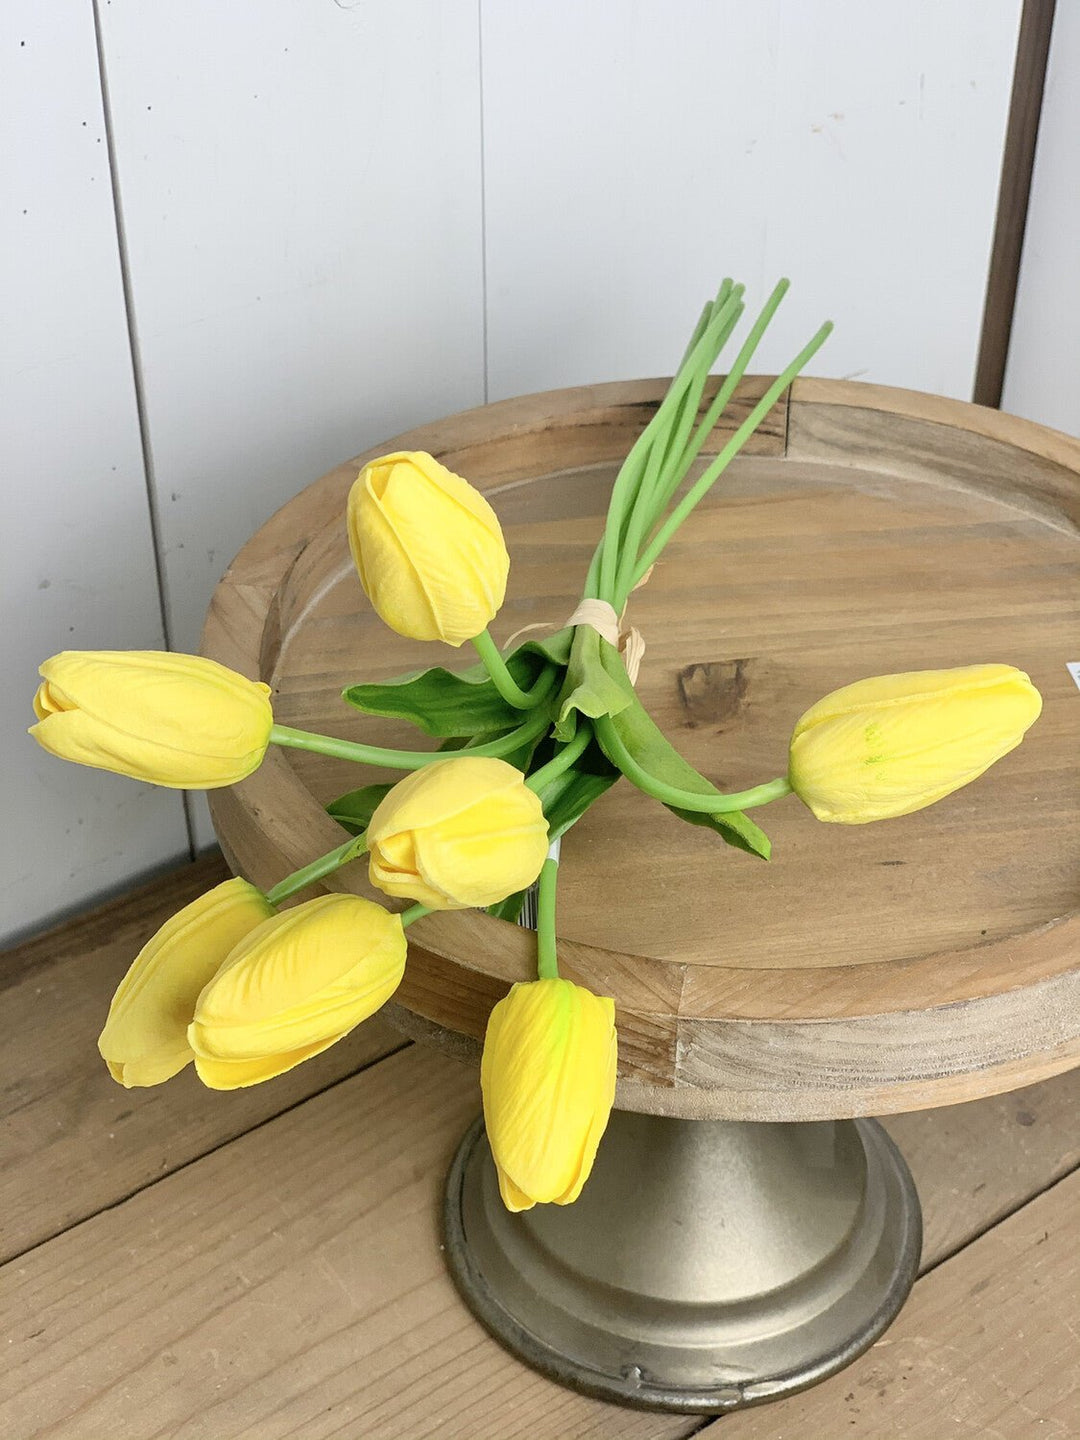 7 Stem Tulip Bouquet